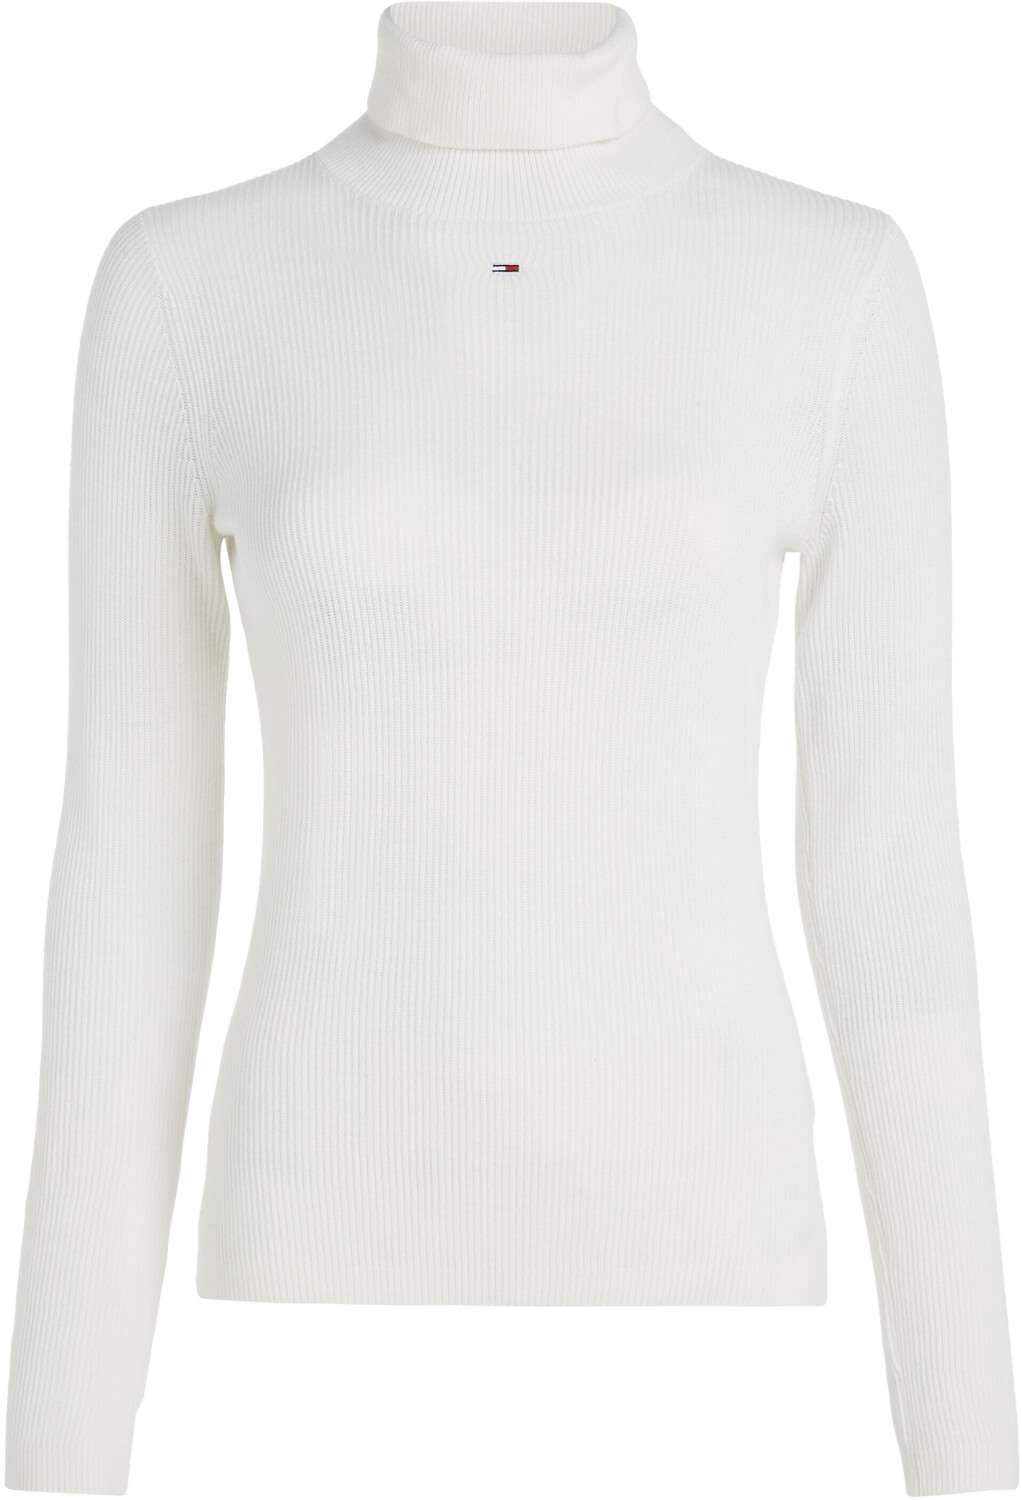 Beliebte Geschäfte Tommy Hilfiger Essential Turtleneck Sweater ab 59,99 bei white € | ancient Preisvergleich (DW0DW16537)